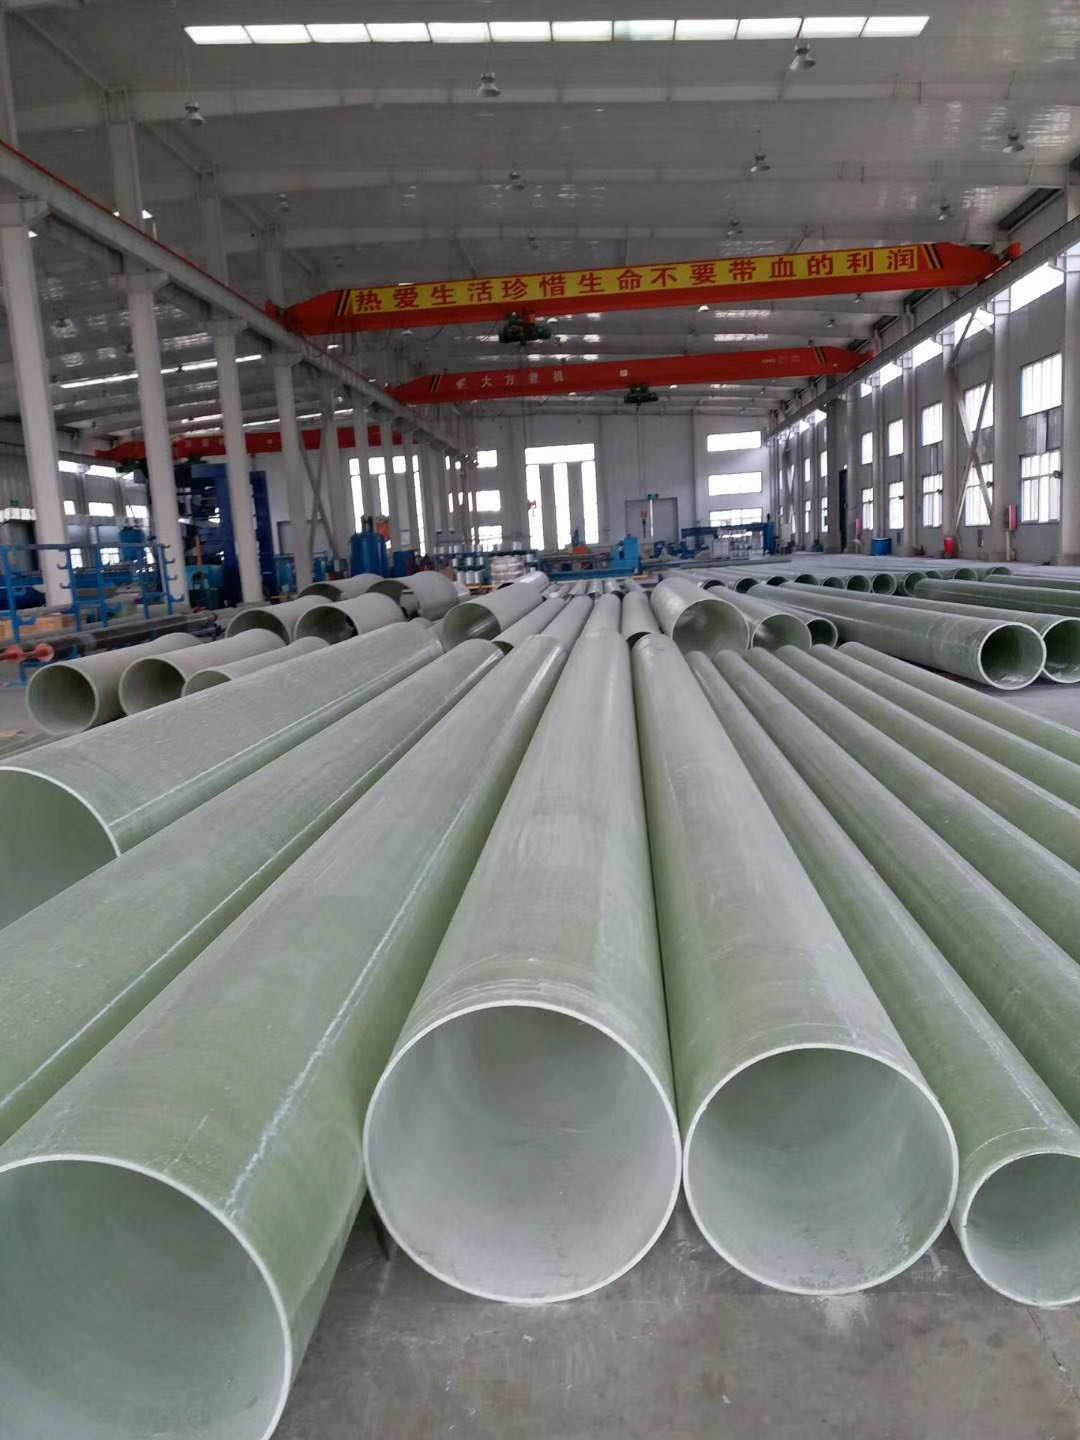 邯郸玻璃钢排污管道供应商 中意玻璃钢厂